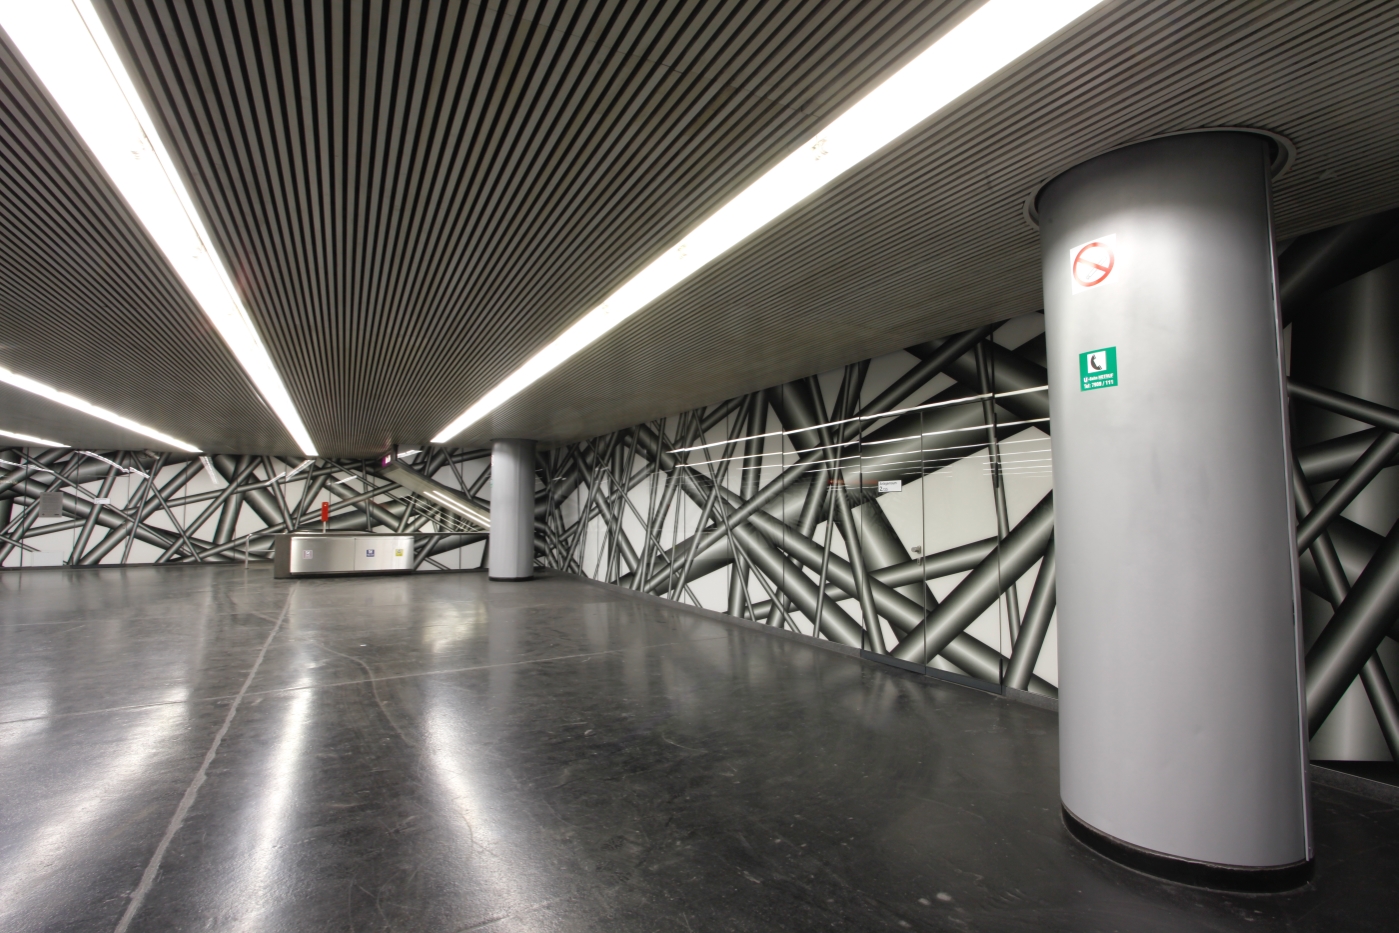 Das von Peter Kogler künstlerisch gestaltete Zwischengeschoß in der U-Bahn-Station Karlsplatz.